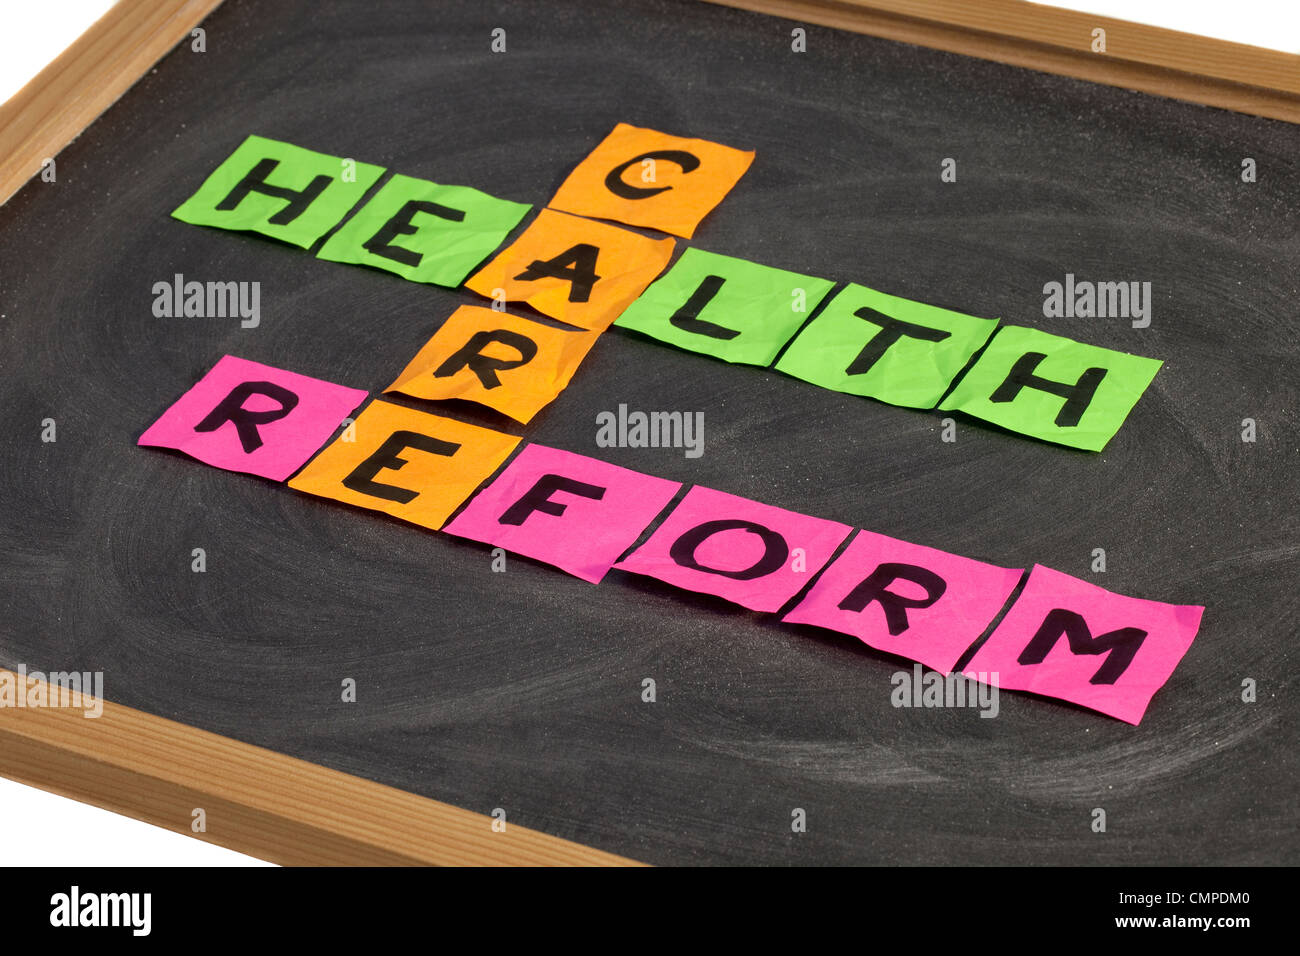 Della riforma sanitaria crossword - colorata sticky notes su una scuola lavagna con gesso bianco texture Foto Stock